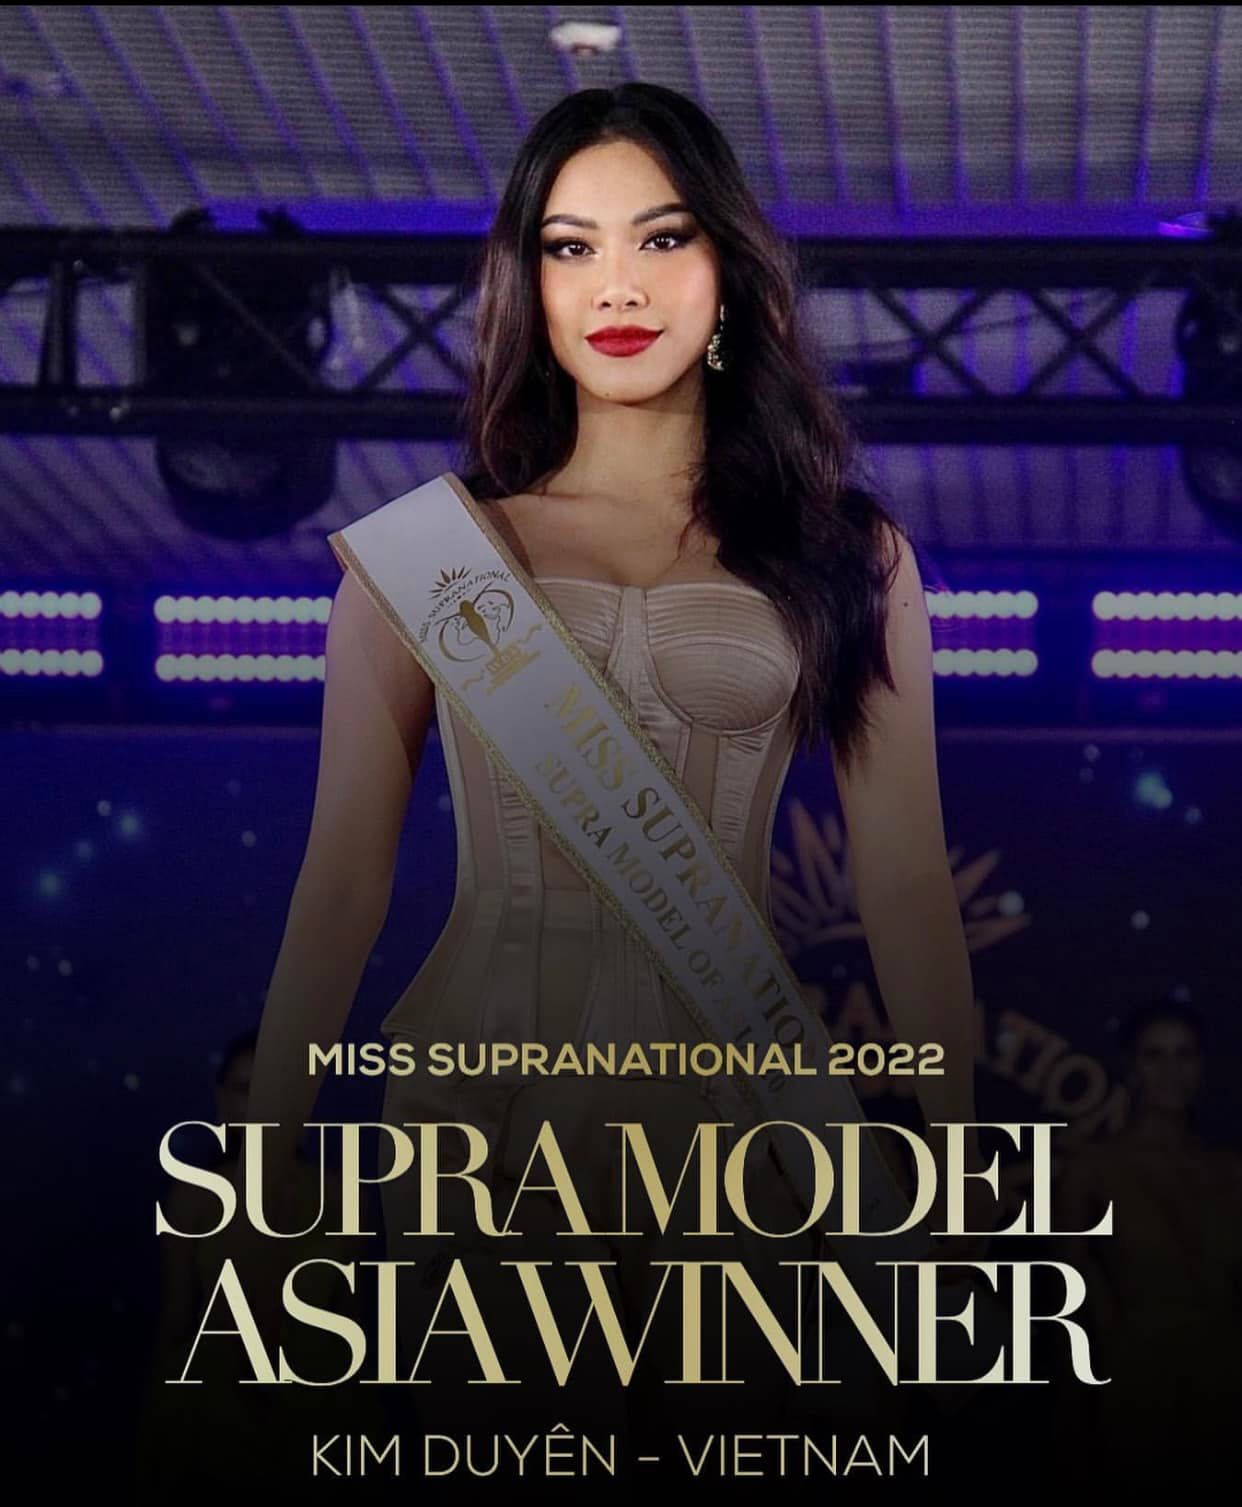  Kim Duyên xuất sắc giành giải đầu tiên tại Miss Supranational 2022